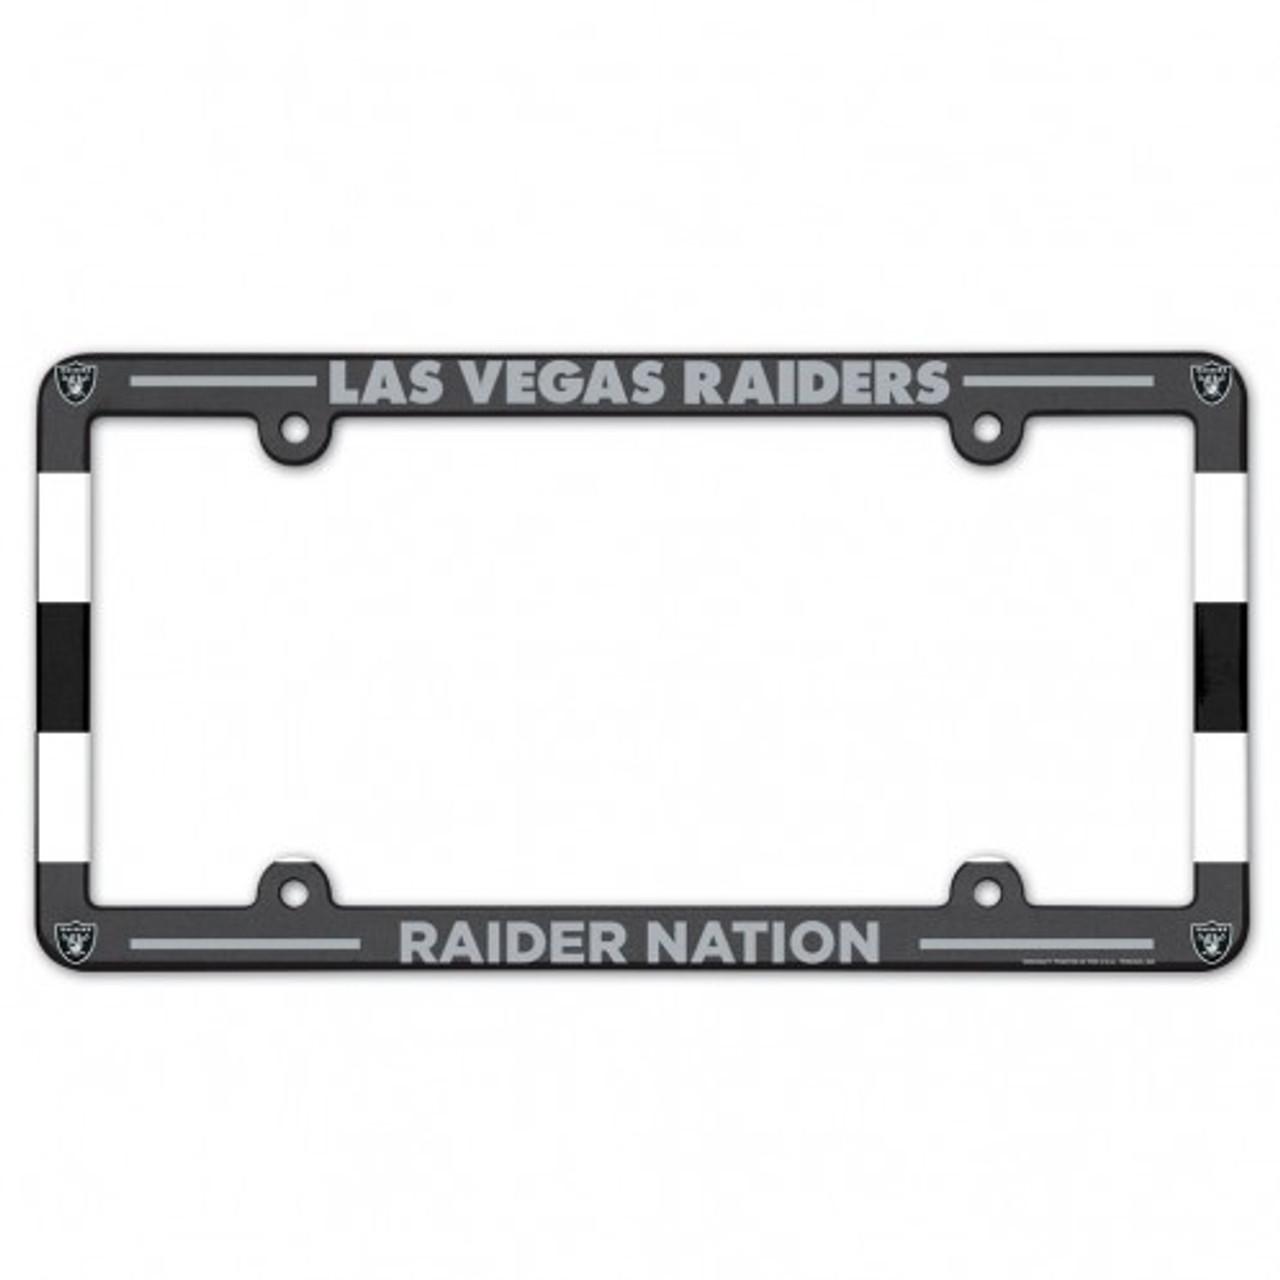 NEW Las Vegas Raiders Football Plastic License Plate Frame 6.5''  x 12.5''- 2PC